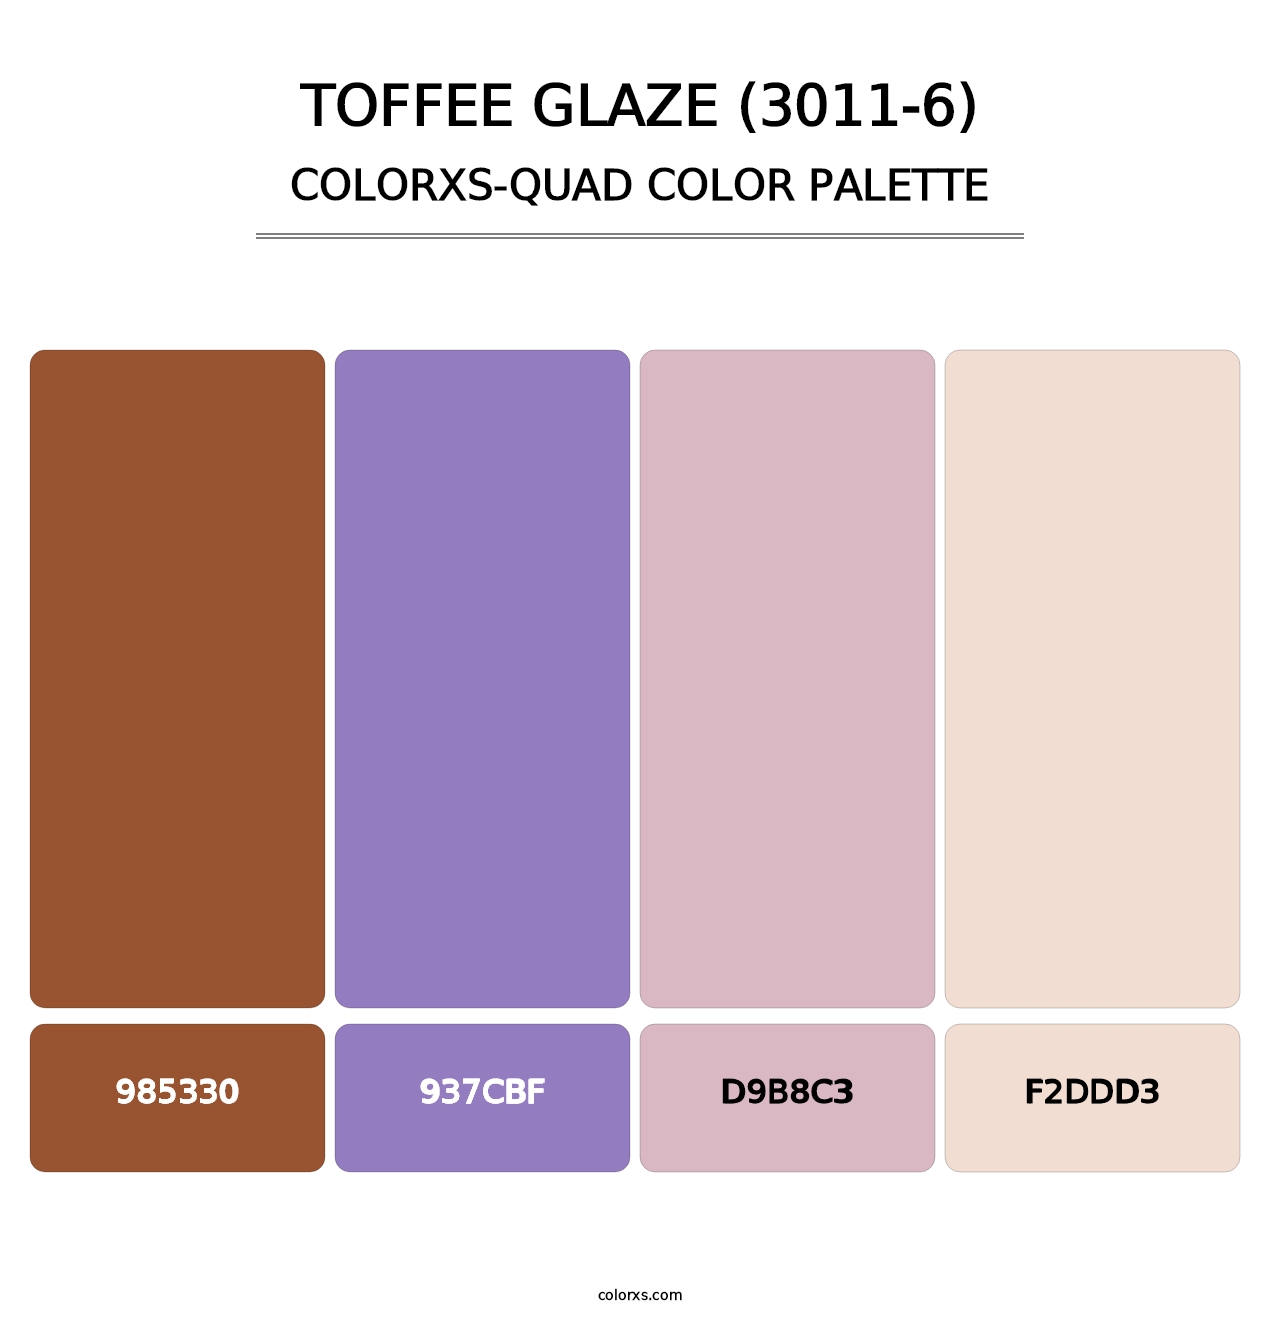 Toffee Glaze (3011-6) - Colorxs Quad Palette